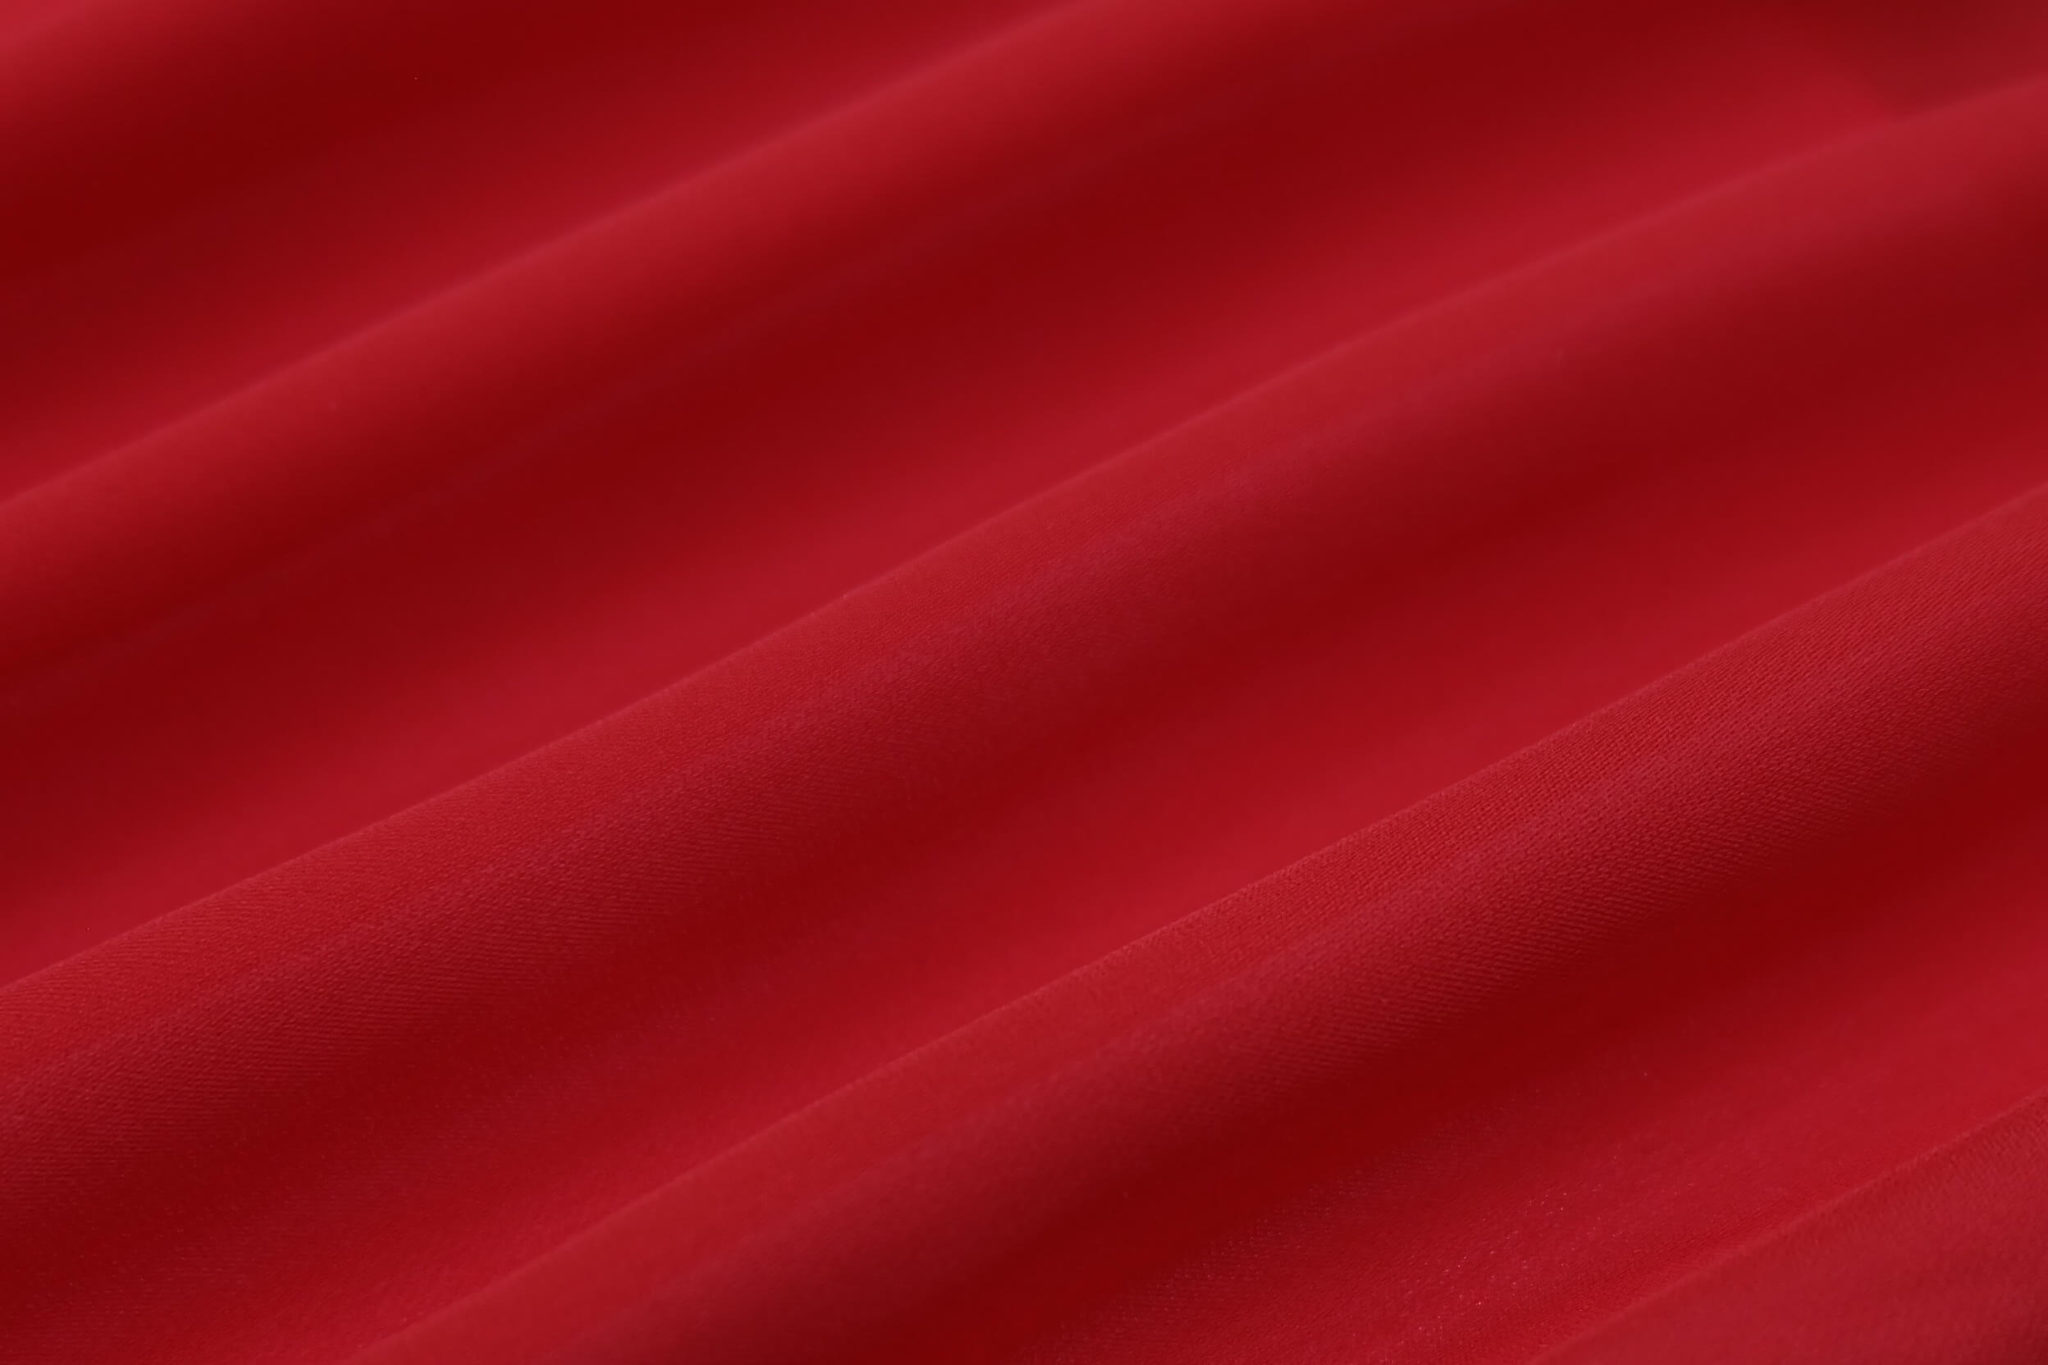 Красненький красная красная. Красная ткань. Красный шелк. Ткань красного цвета. Фон ткань.